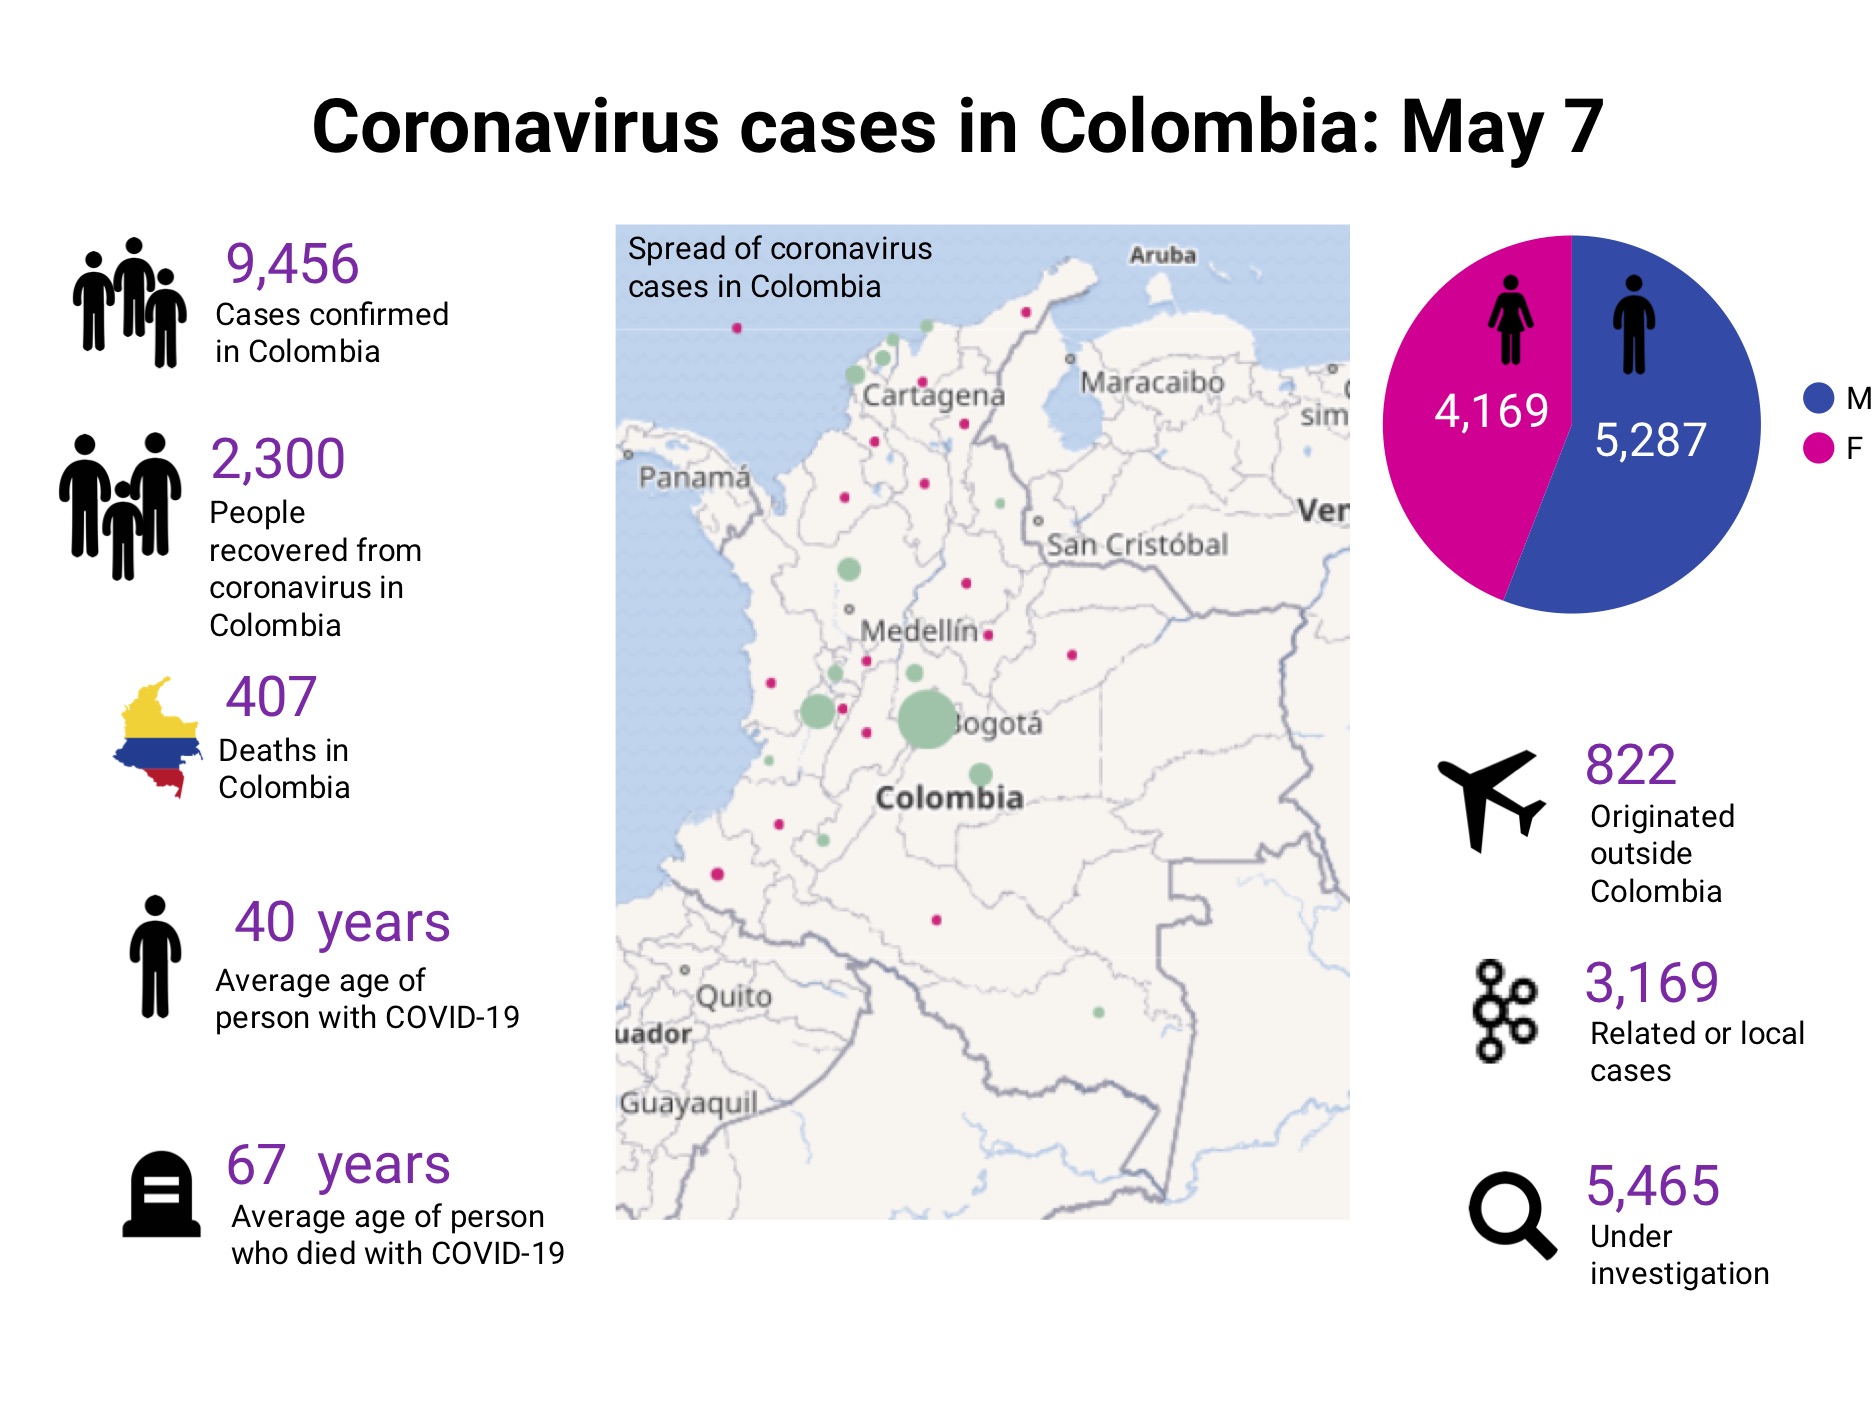 Coronavirus in Colombia: May 7 update